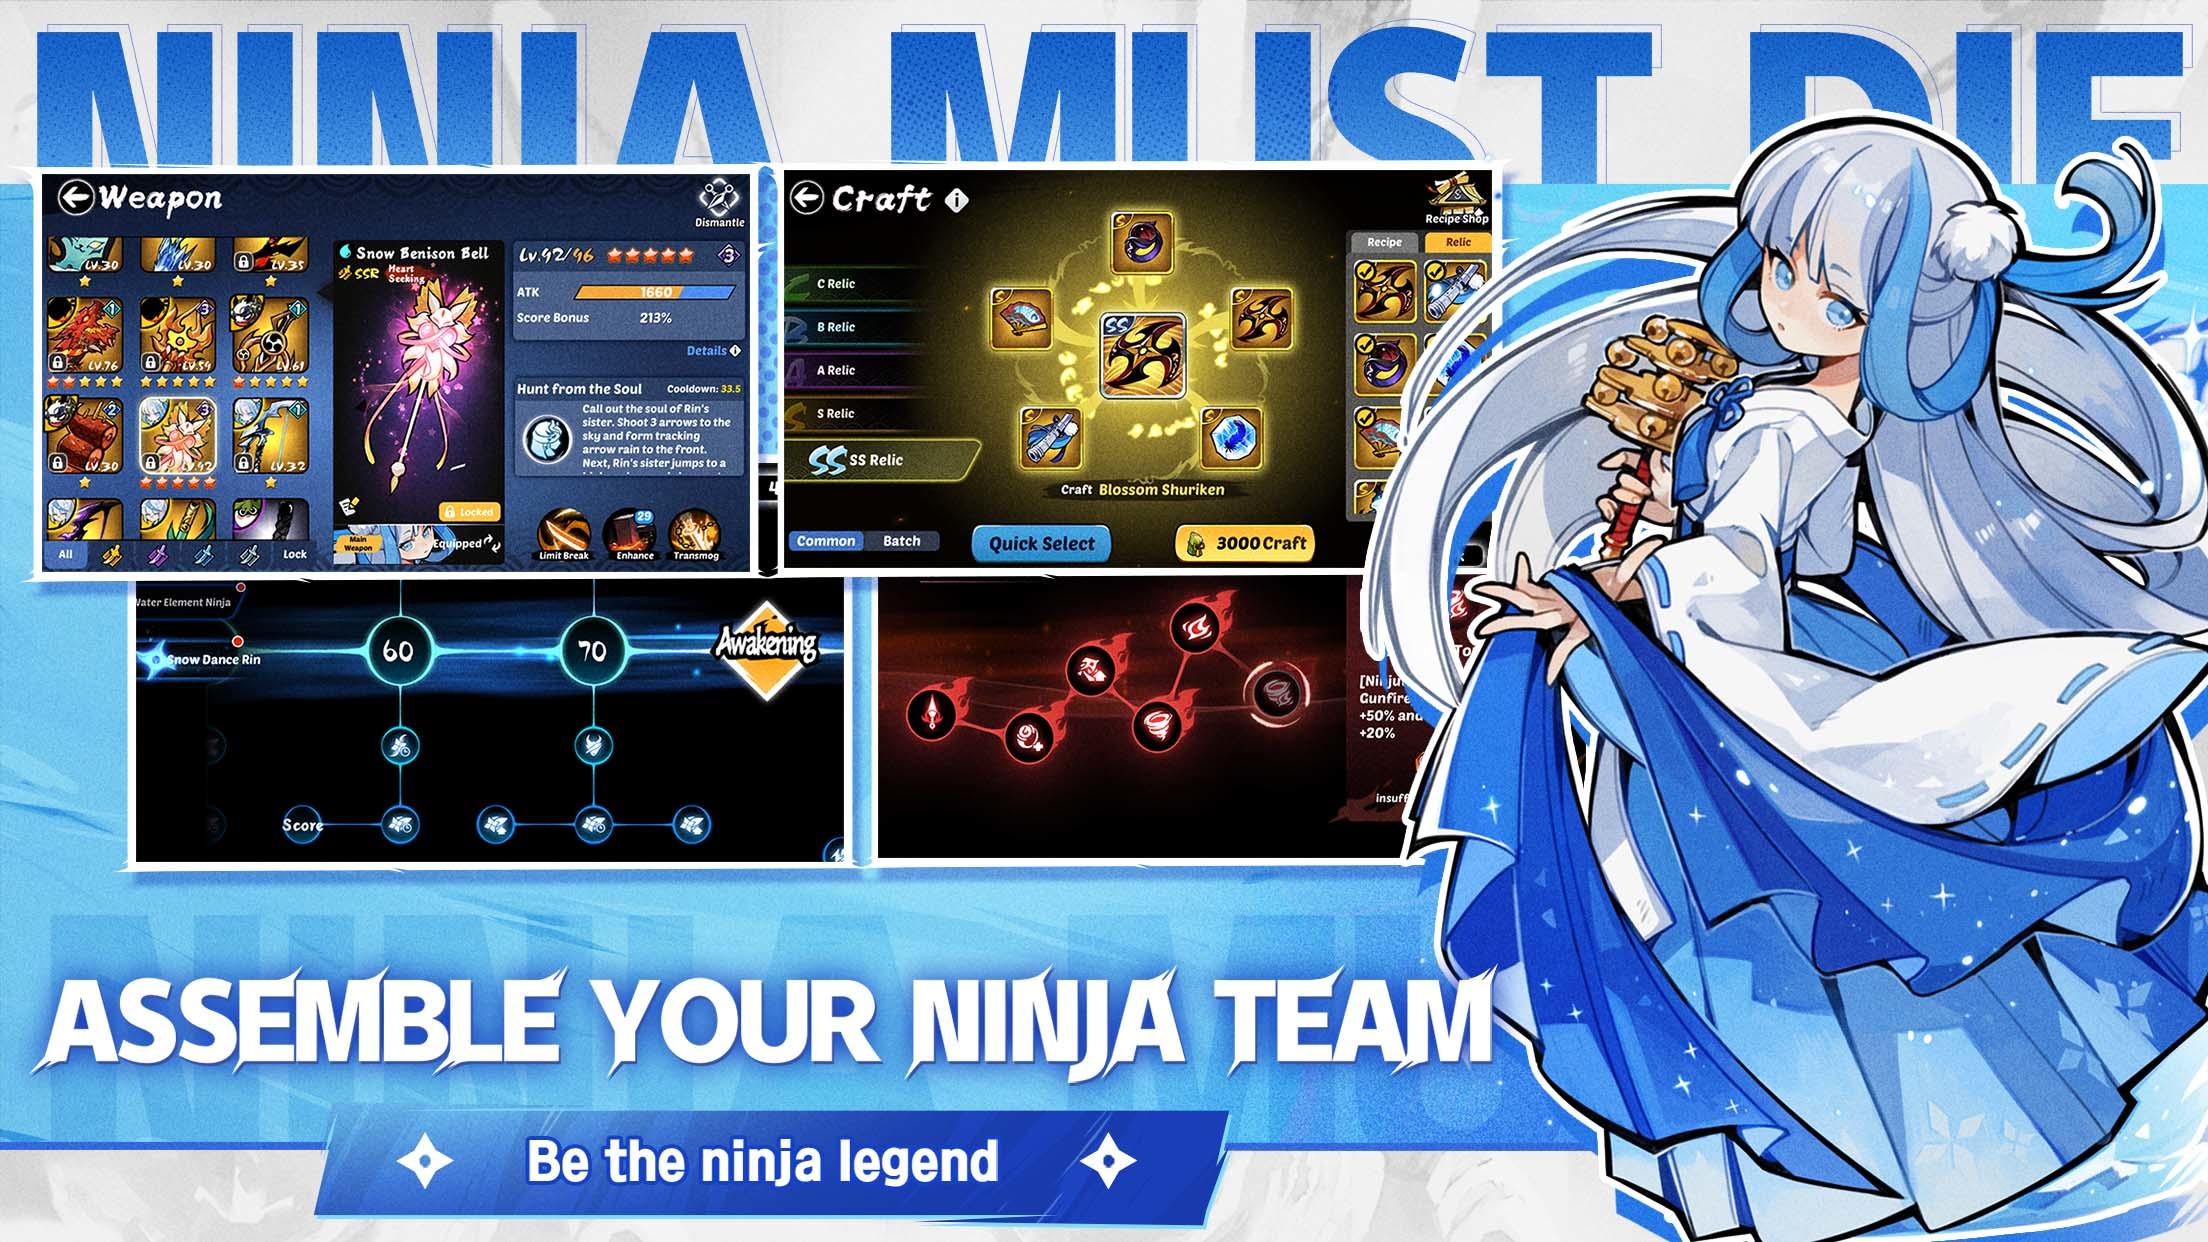 Create the Ultimate Ninja in Ninja Must Die! - Ninja Must Die - TapTap